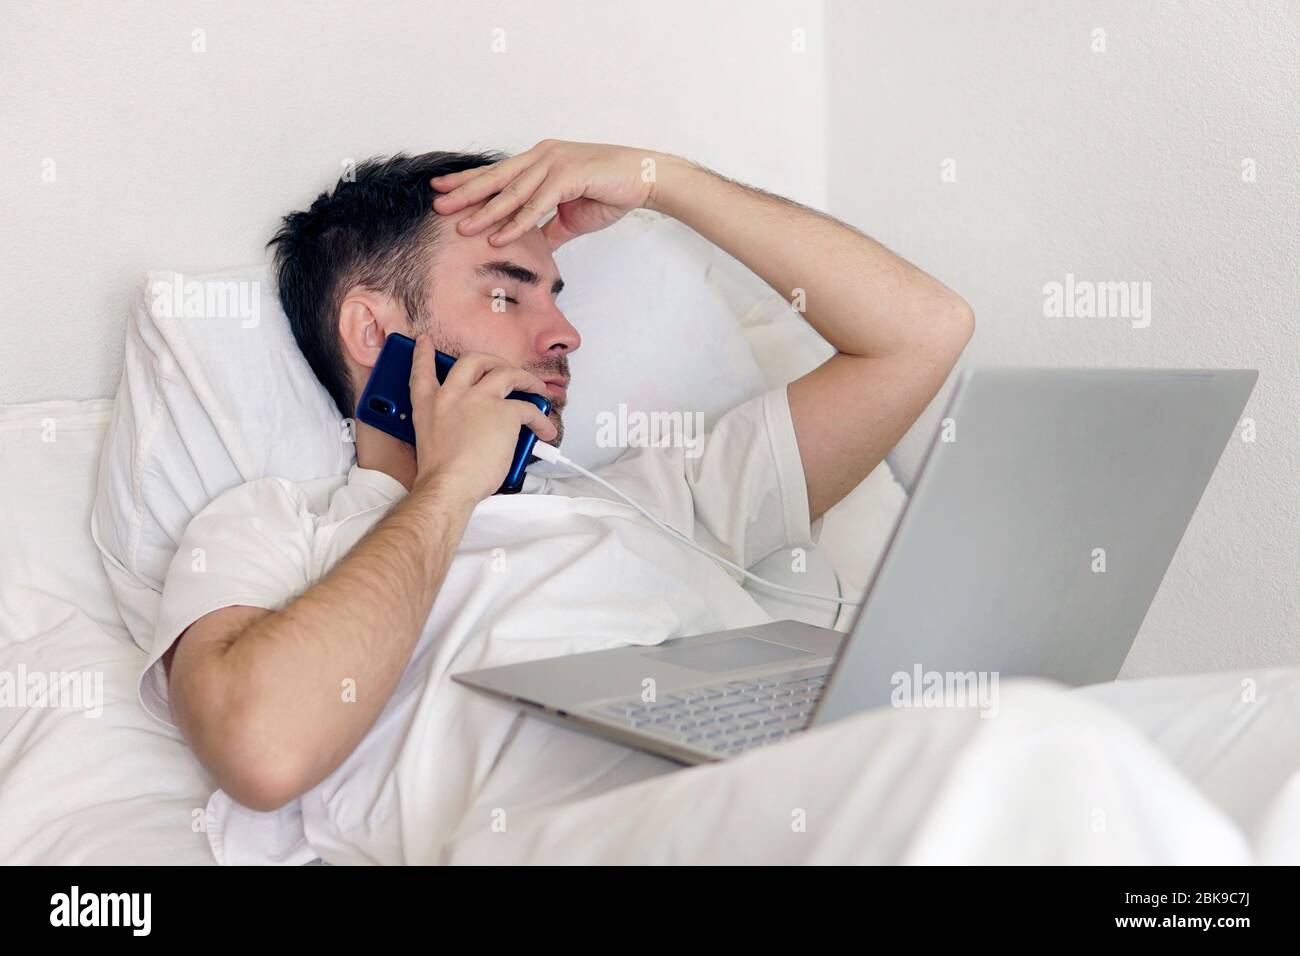 Un homme adulte est allongé dans un lit d'hôpital avec un ordinateur portable tenant sa tête. Concept de travail à distance pendant la pandémie du coronavirus Banque D'Images